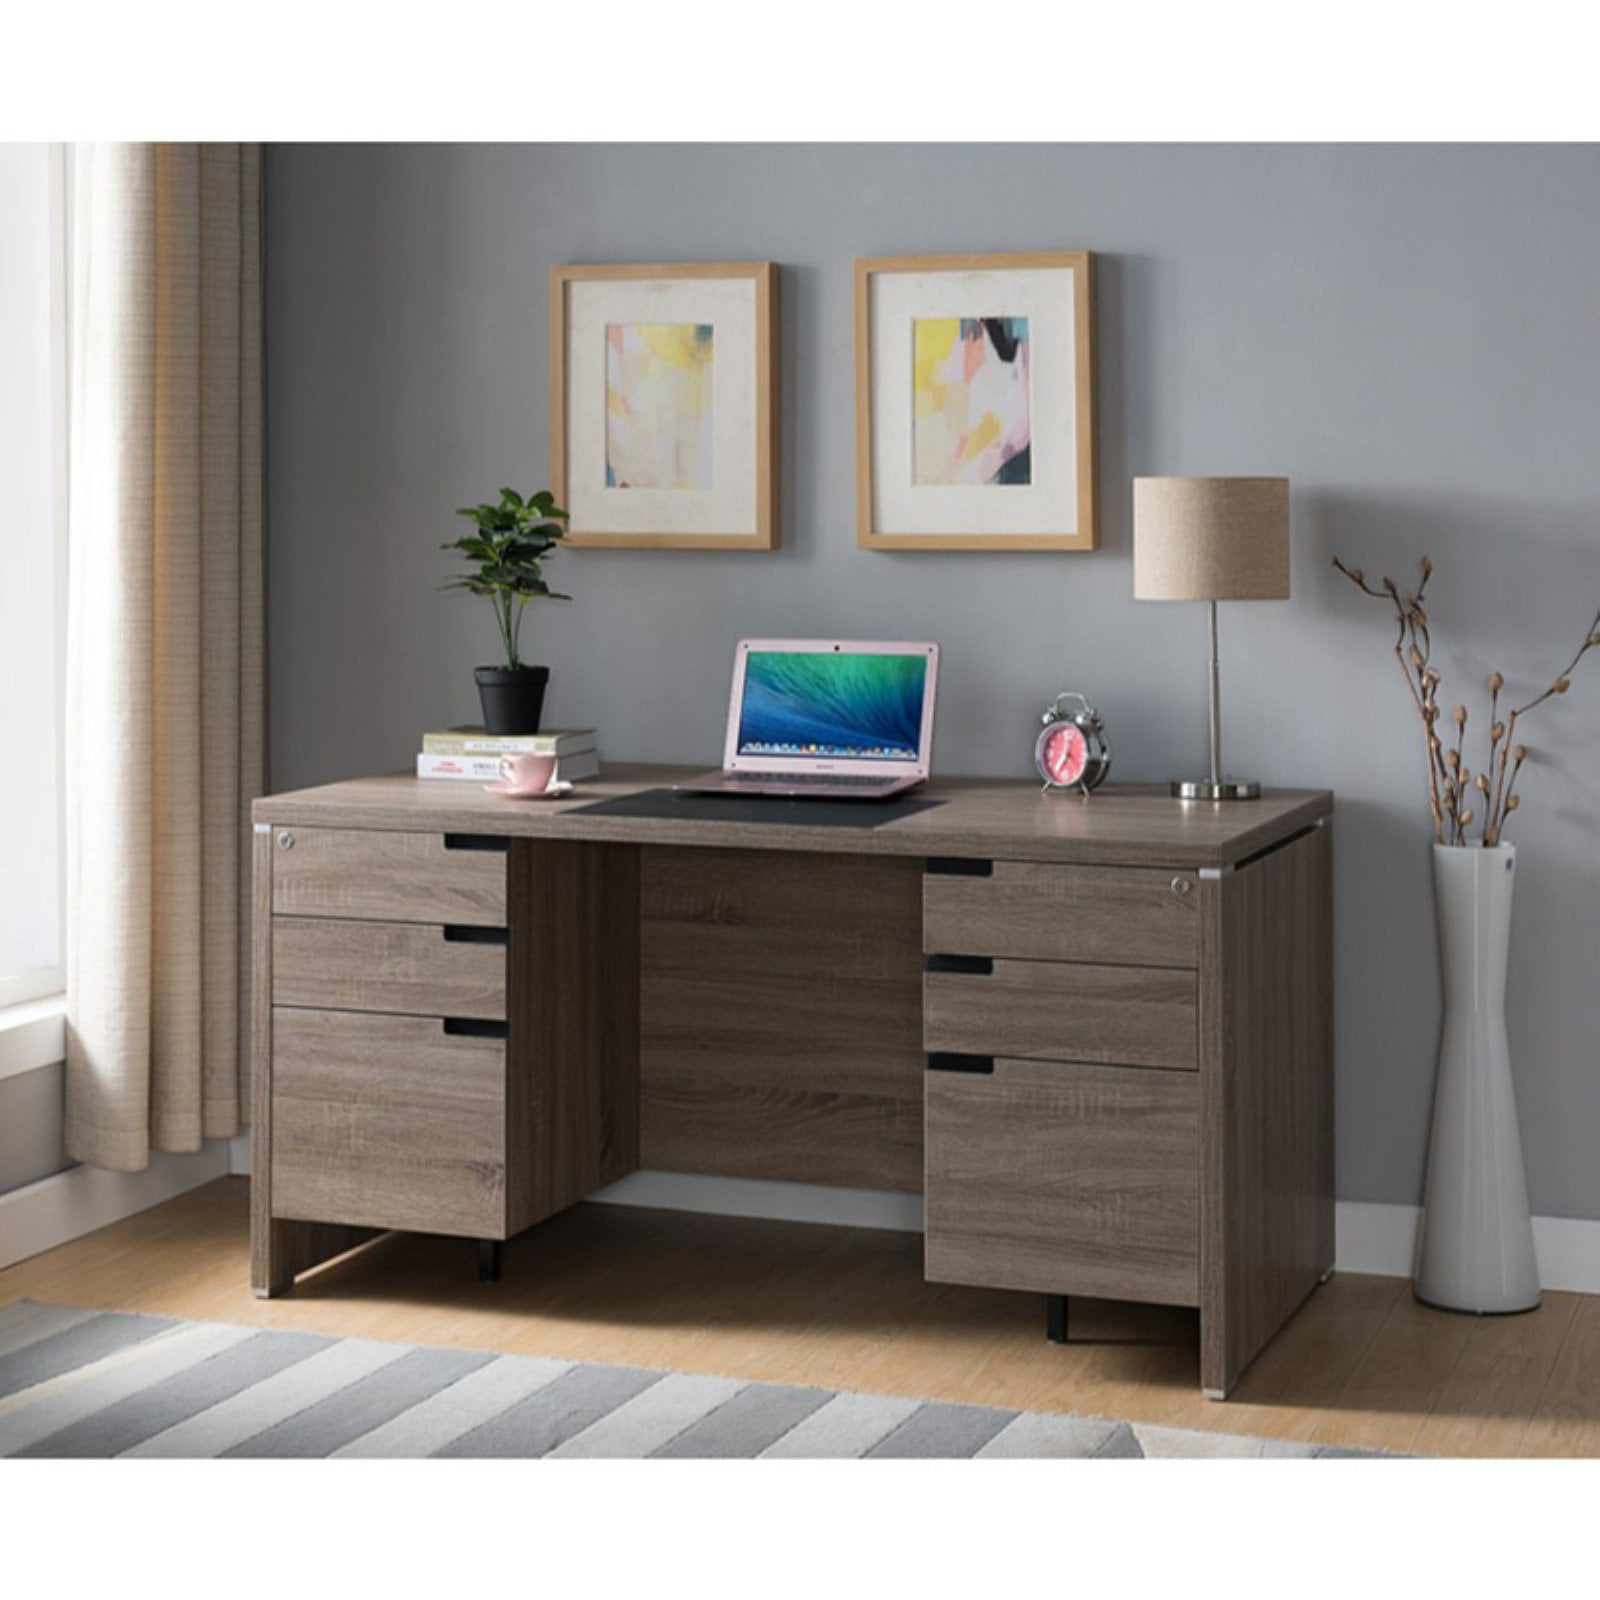 Benzara Bm179607 Wooden Desk With Locking Drawers 44 Dark Taupe